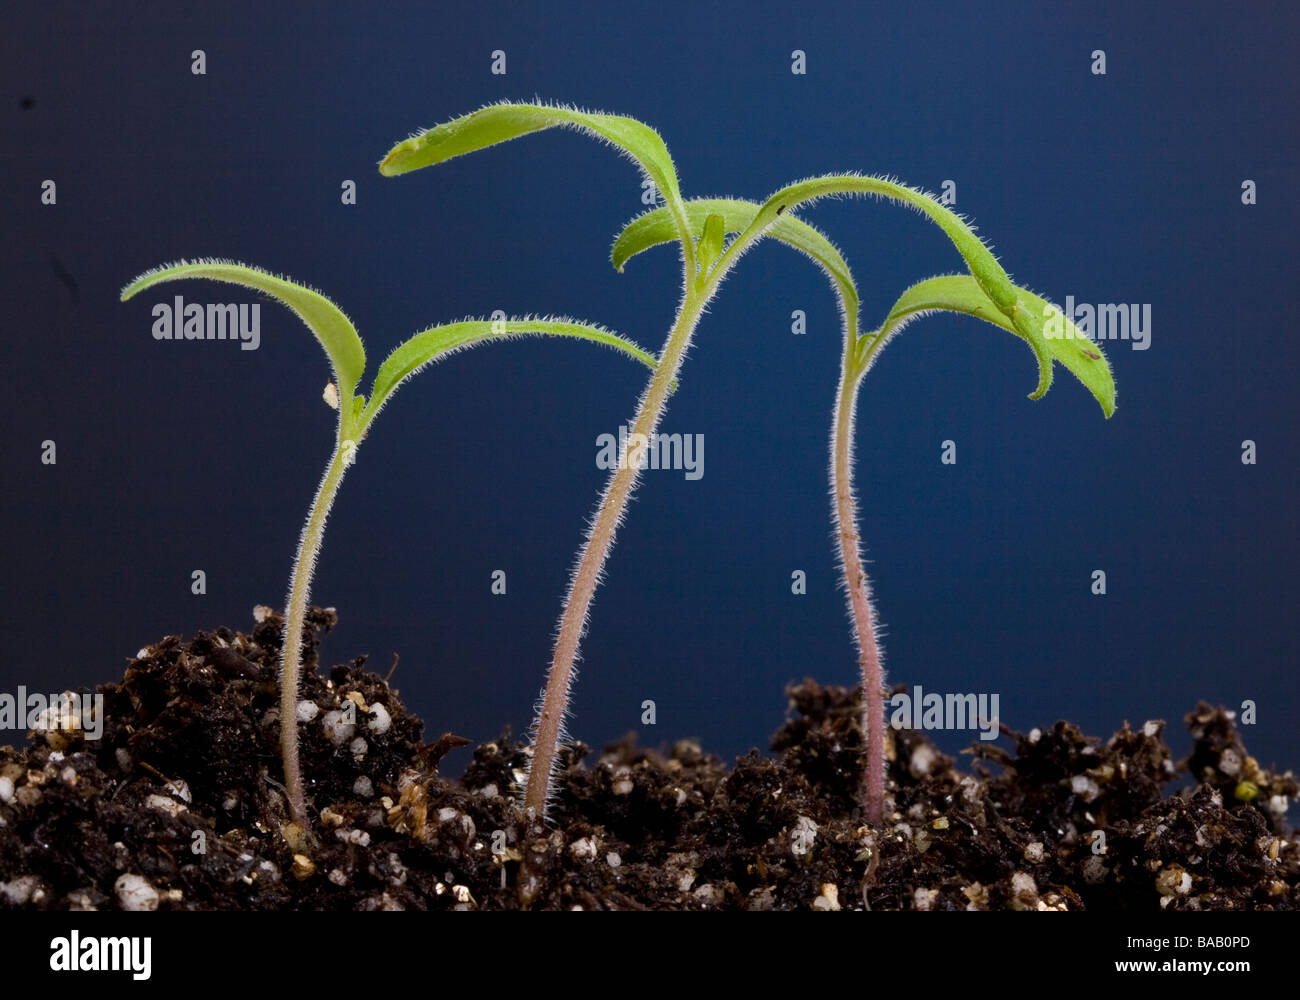 Heirloom tomato seedlings Stock Photo